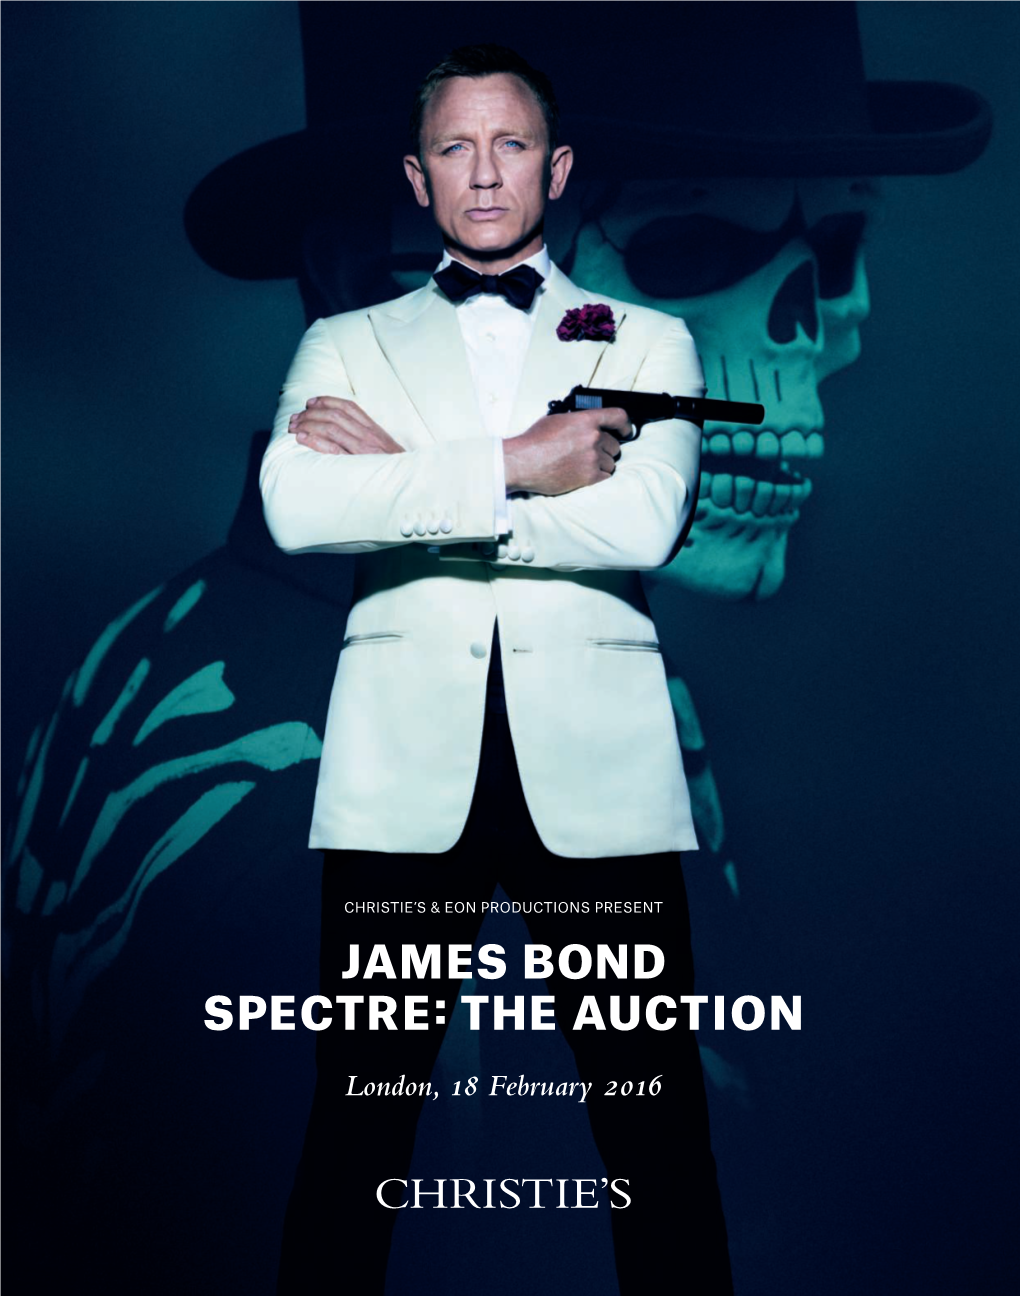 James Bond Spectre: the Auction